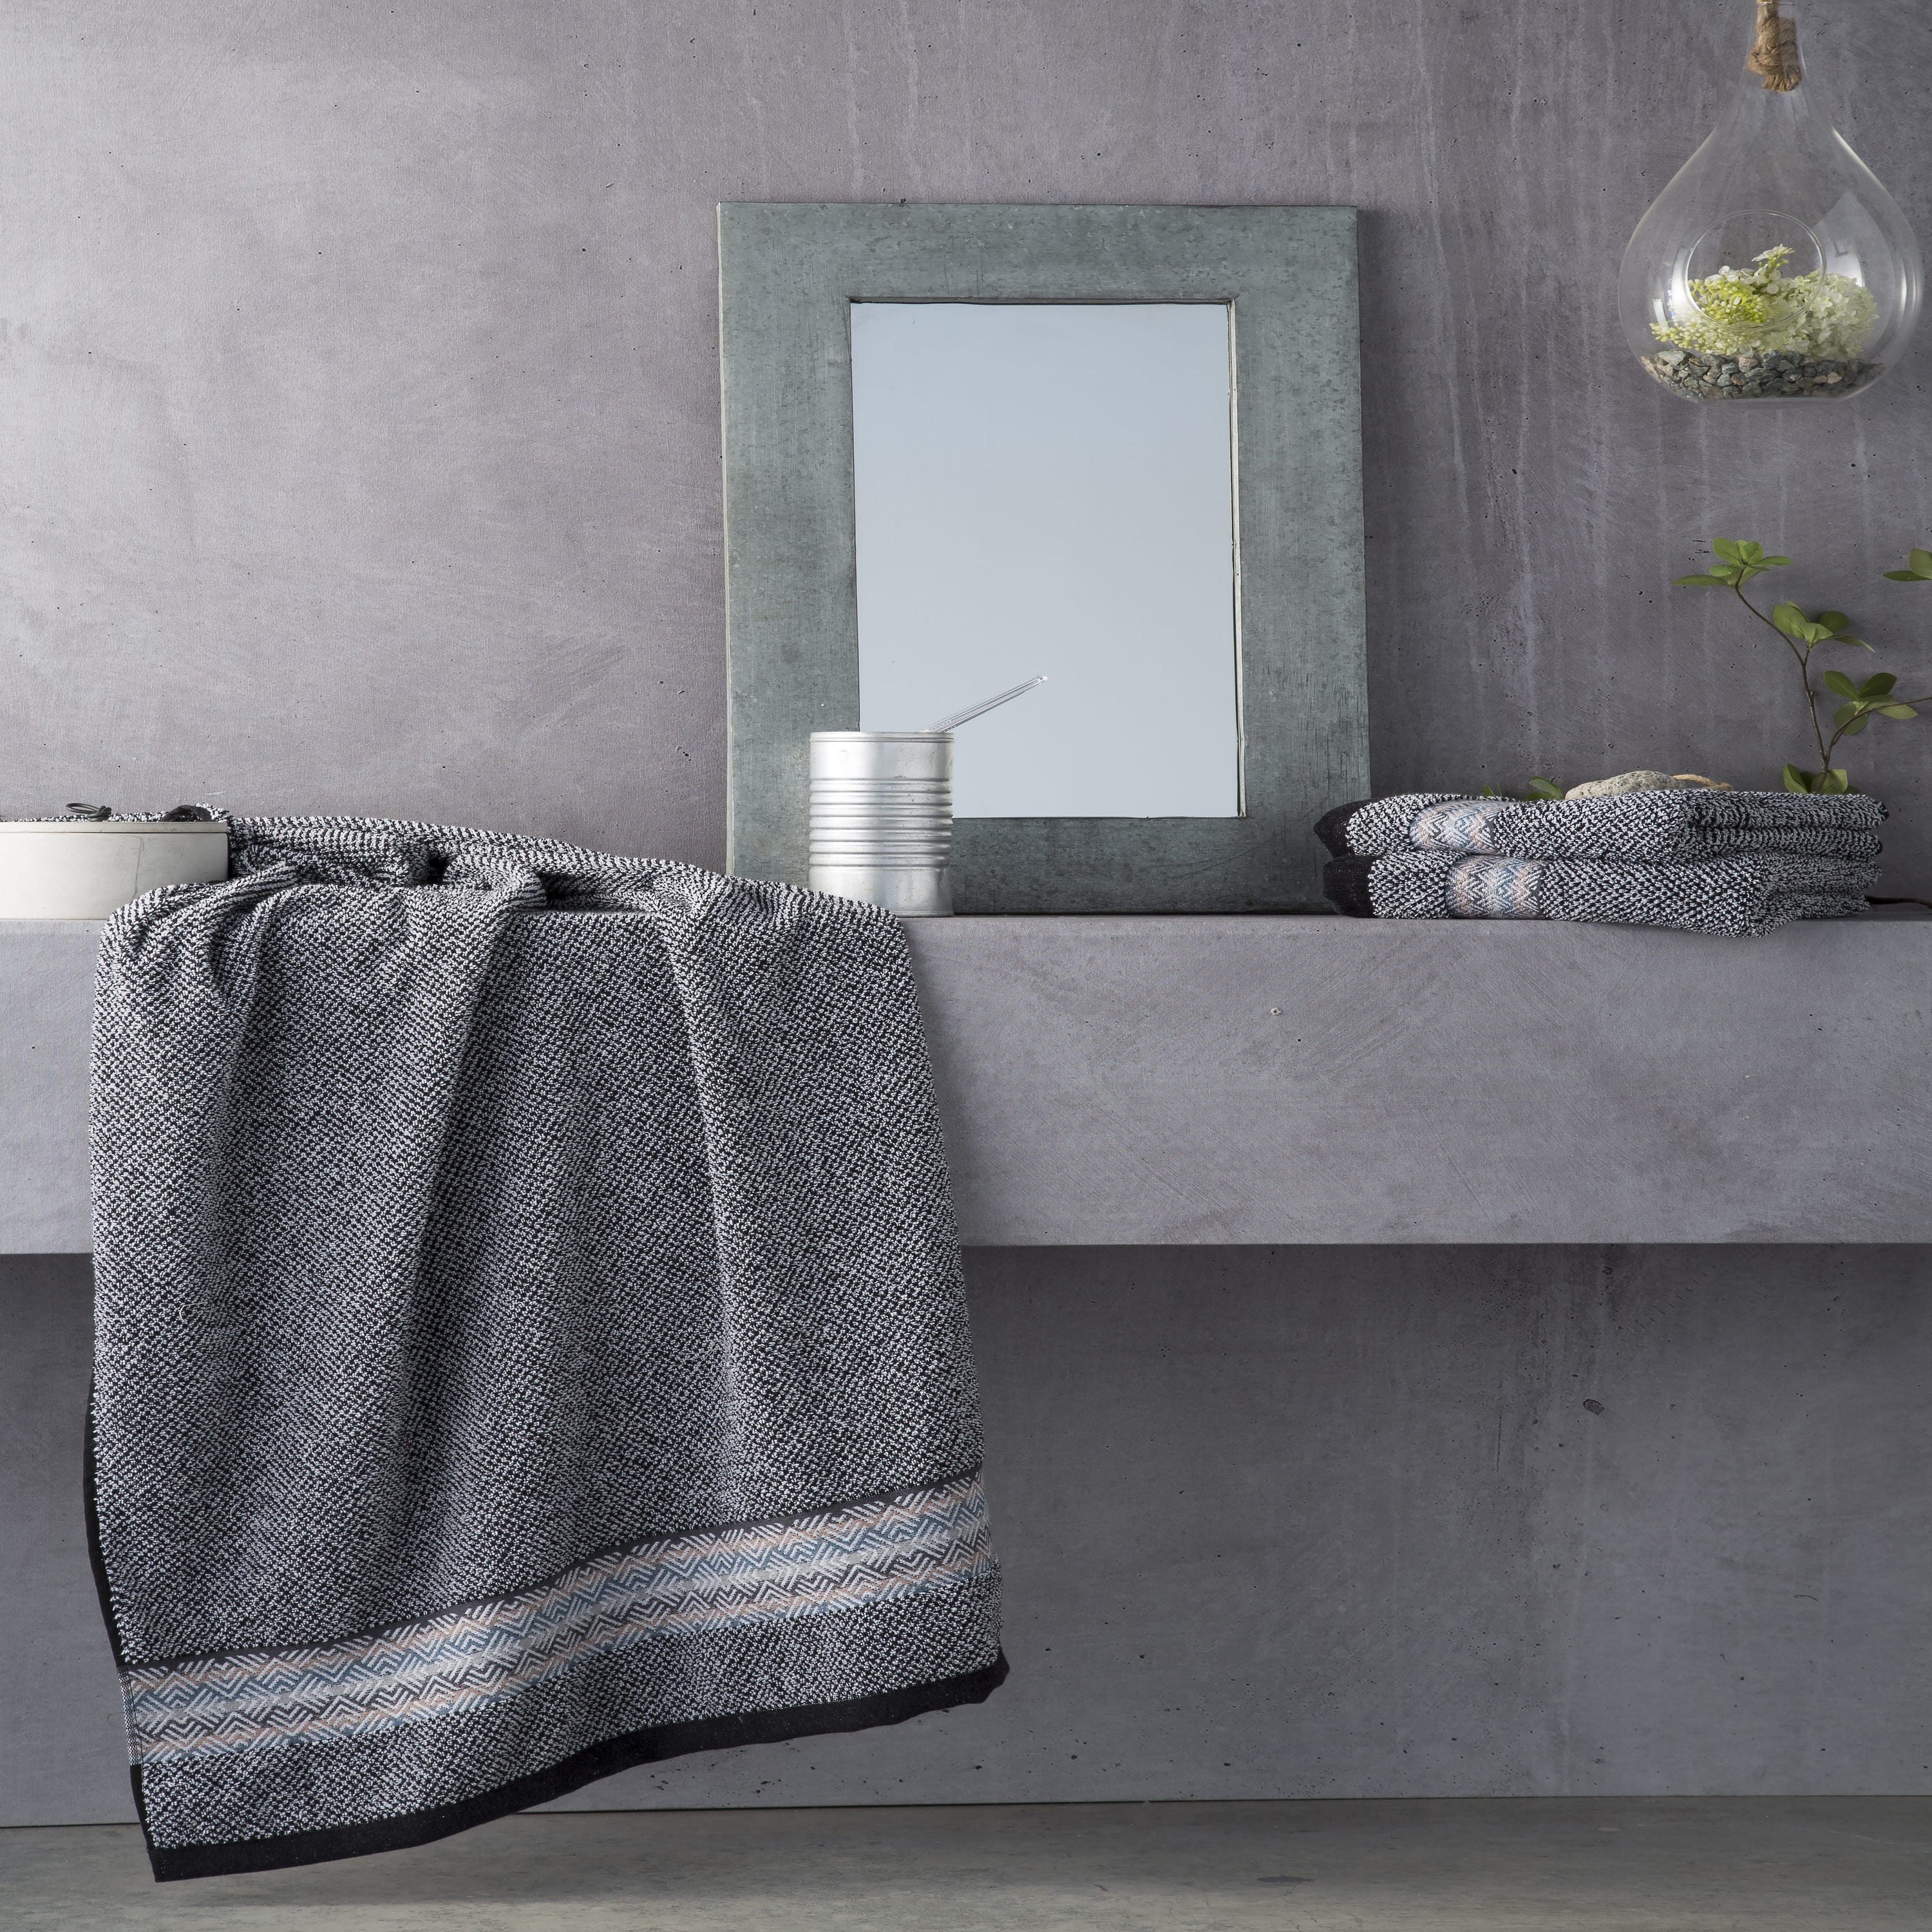 Set de ducha 3 toallas Adriatico Negro/Blanco jacquard de algodón 500  gramos